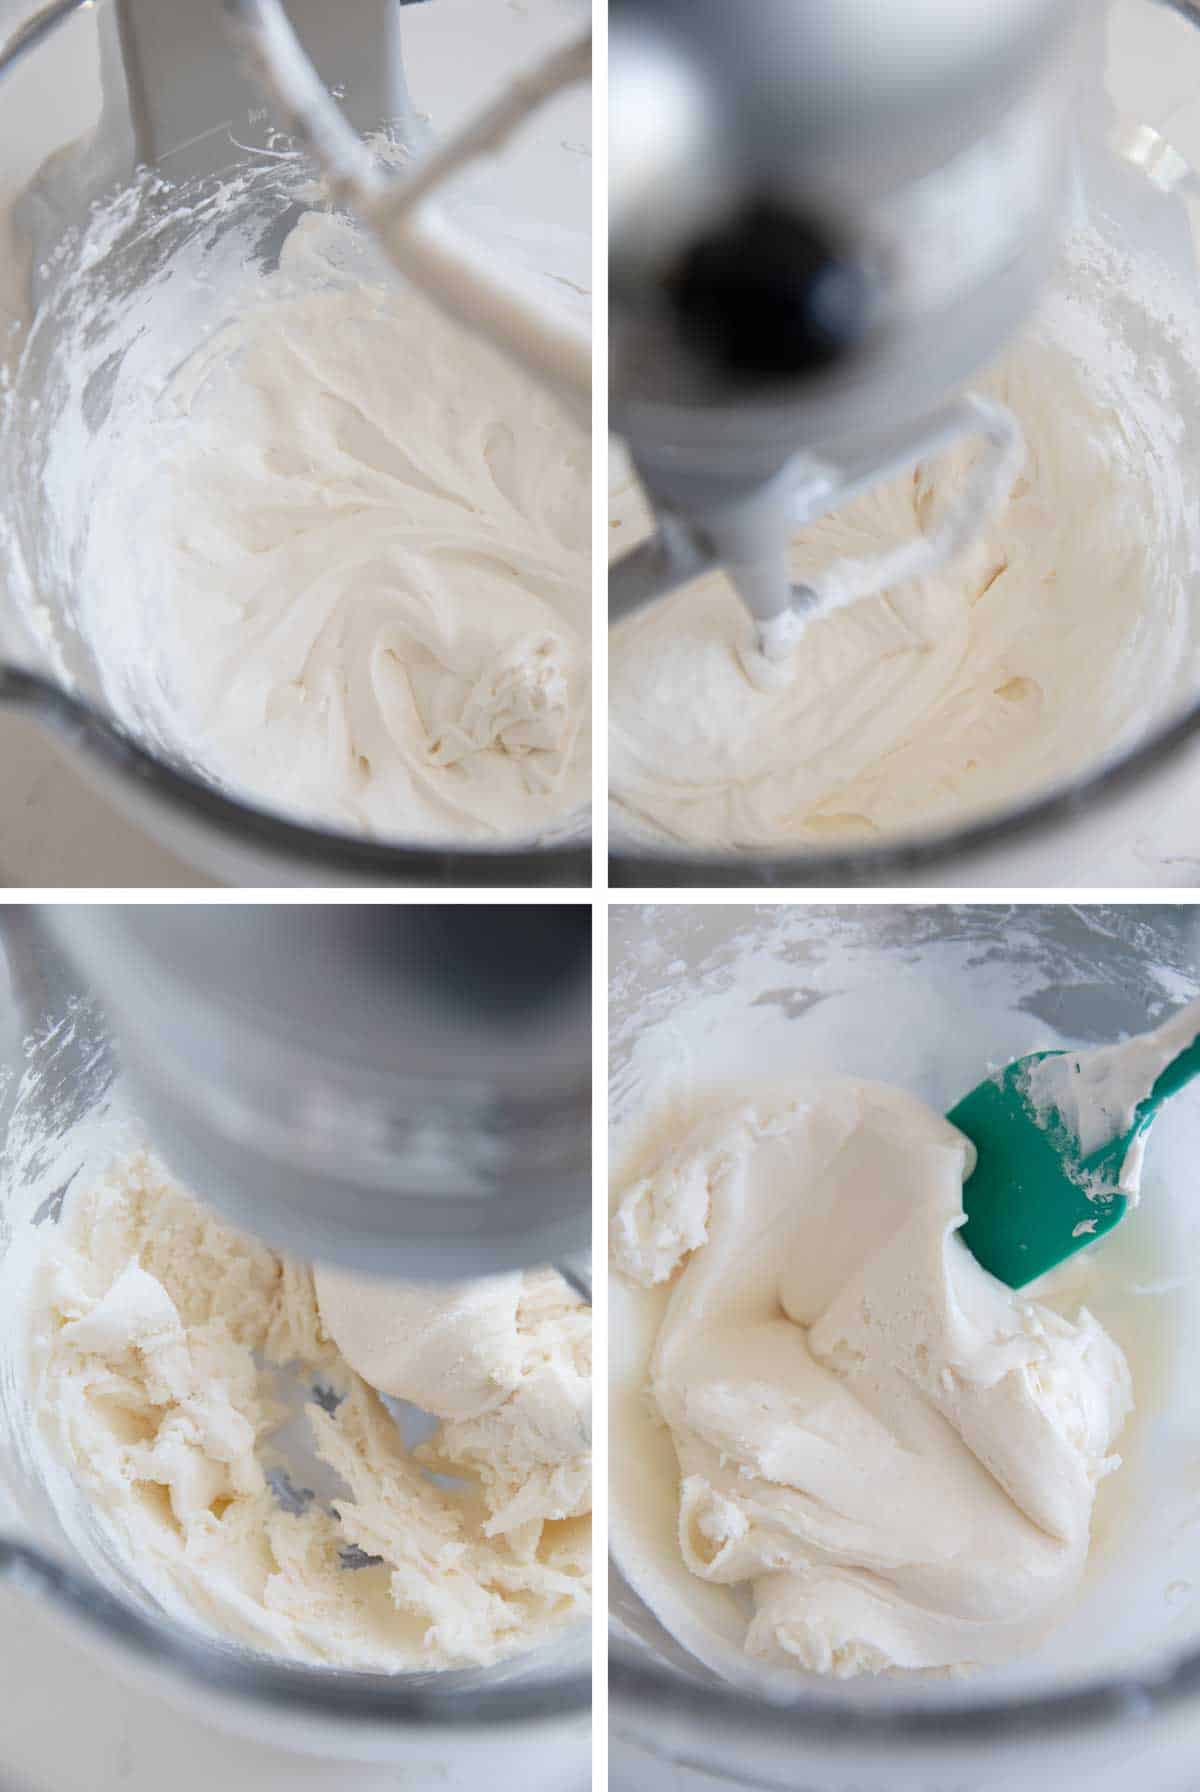 mixing ingredients to make marshmallow creme truffles